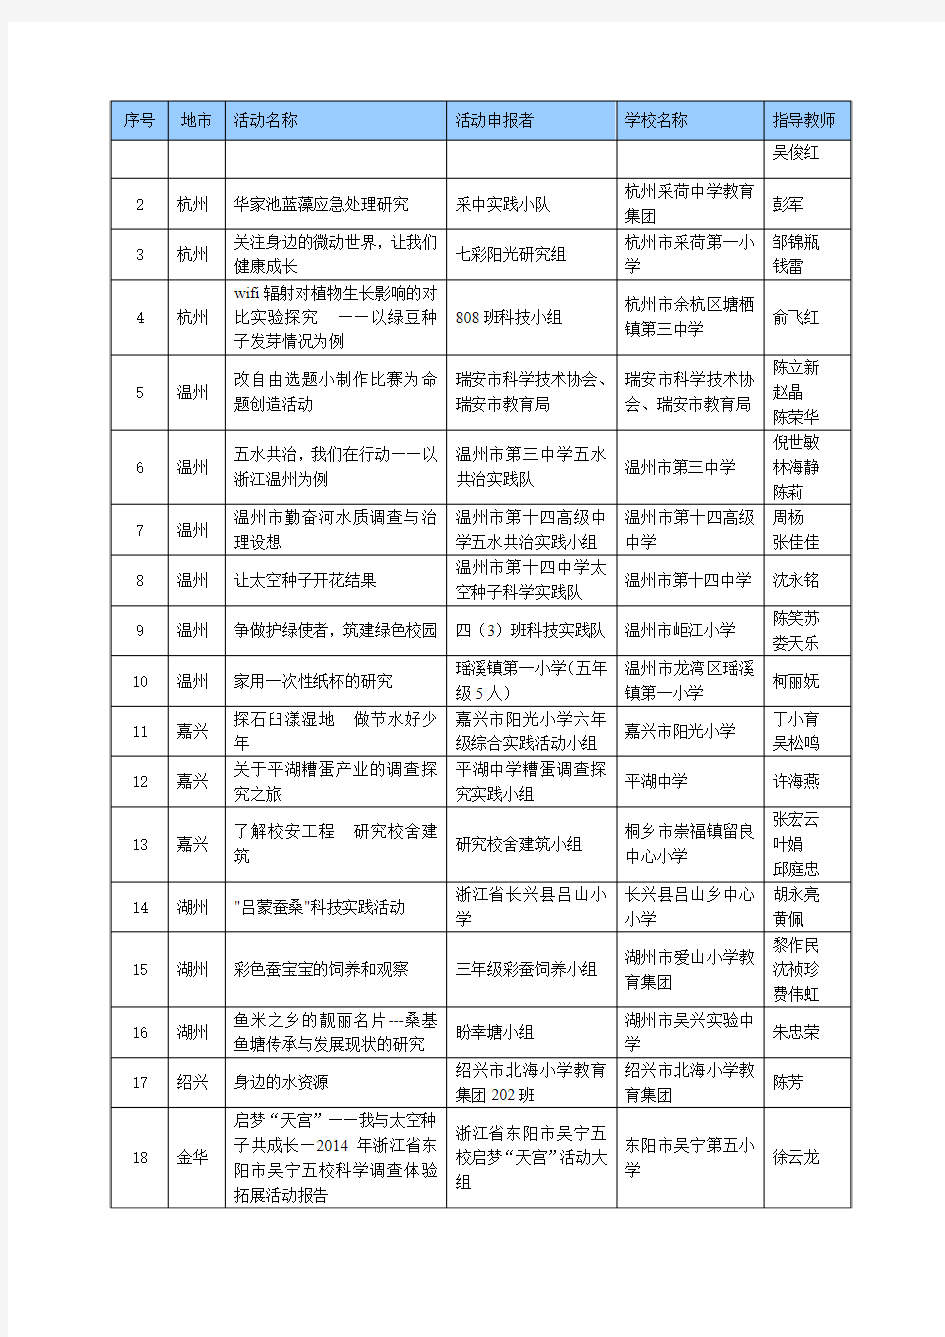 第29届浙江省青少年科技创新大赛 获奖名单